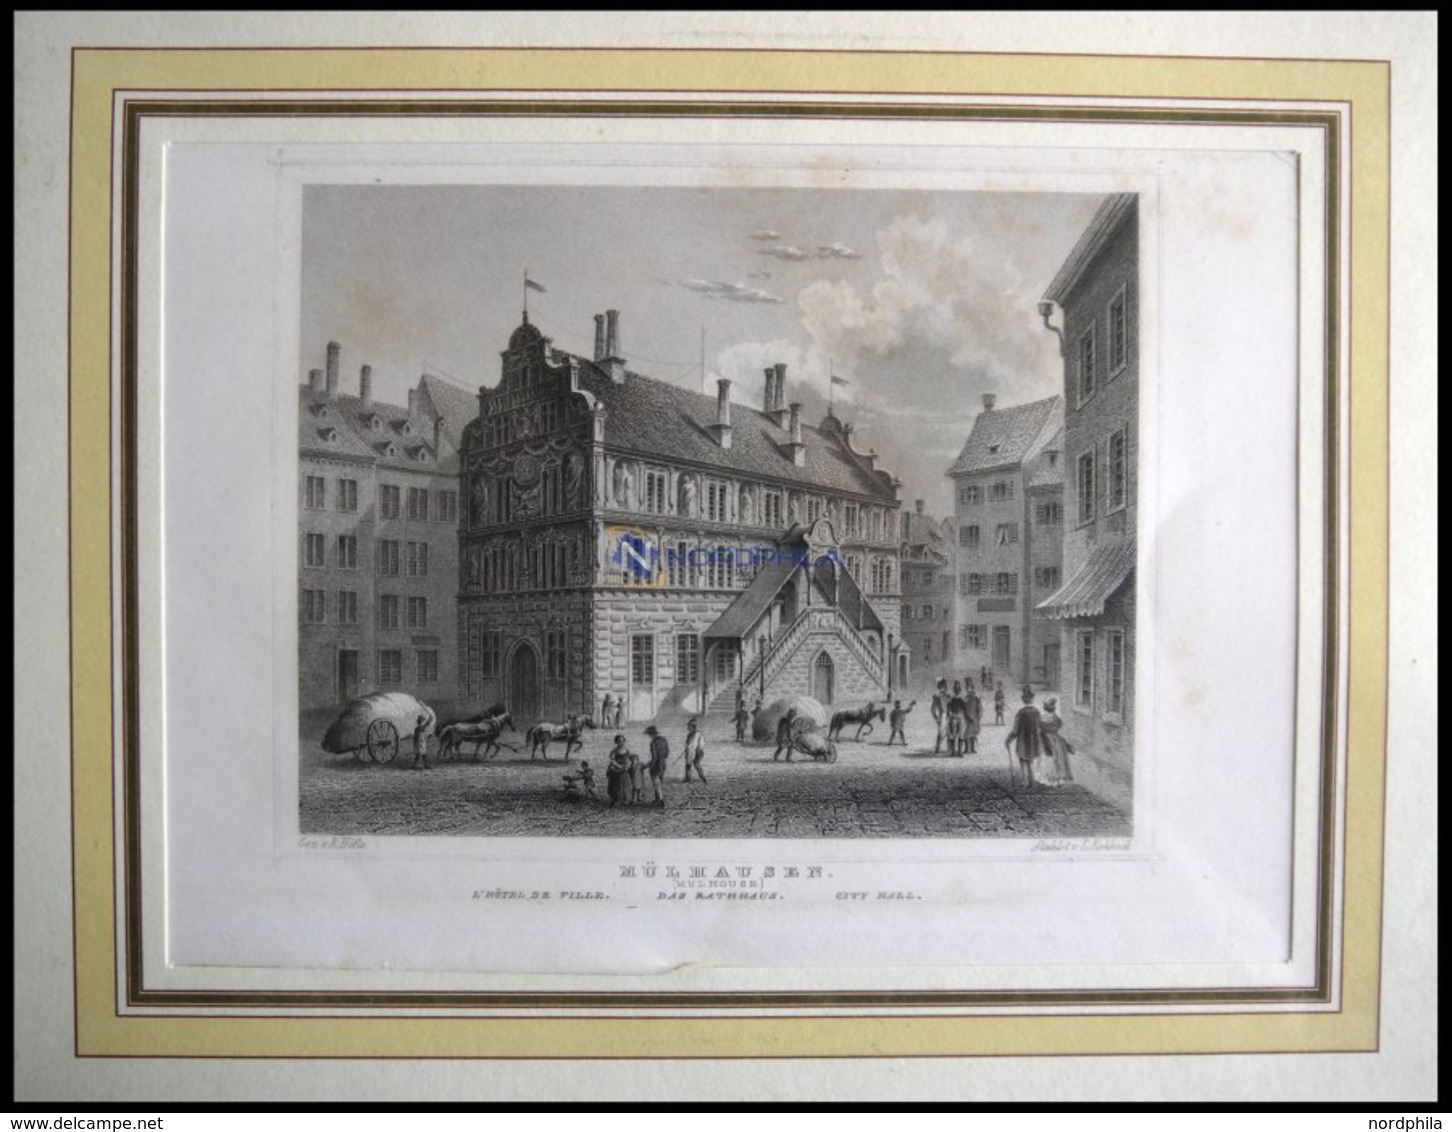 MÜHLHAUSEN: Das Rathaus, Stahlstich Von Höfle/Rohbock Um 1840 - Litografía